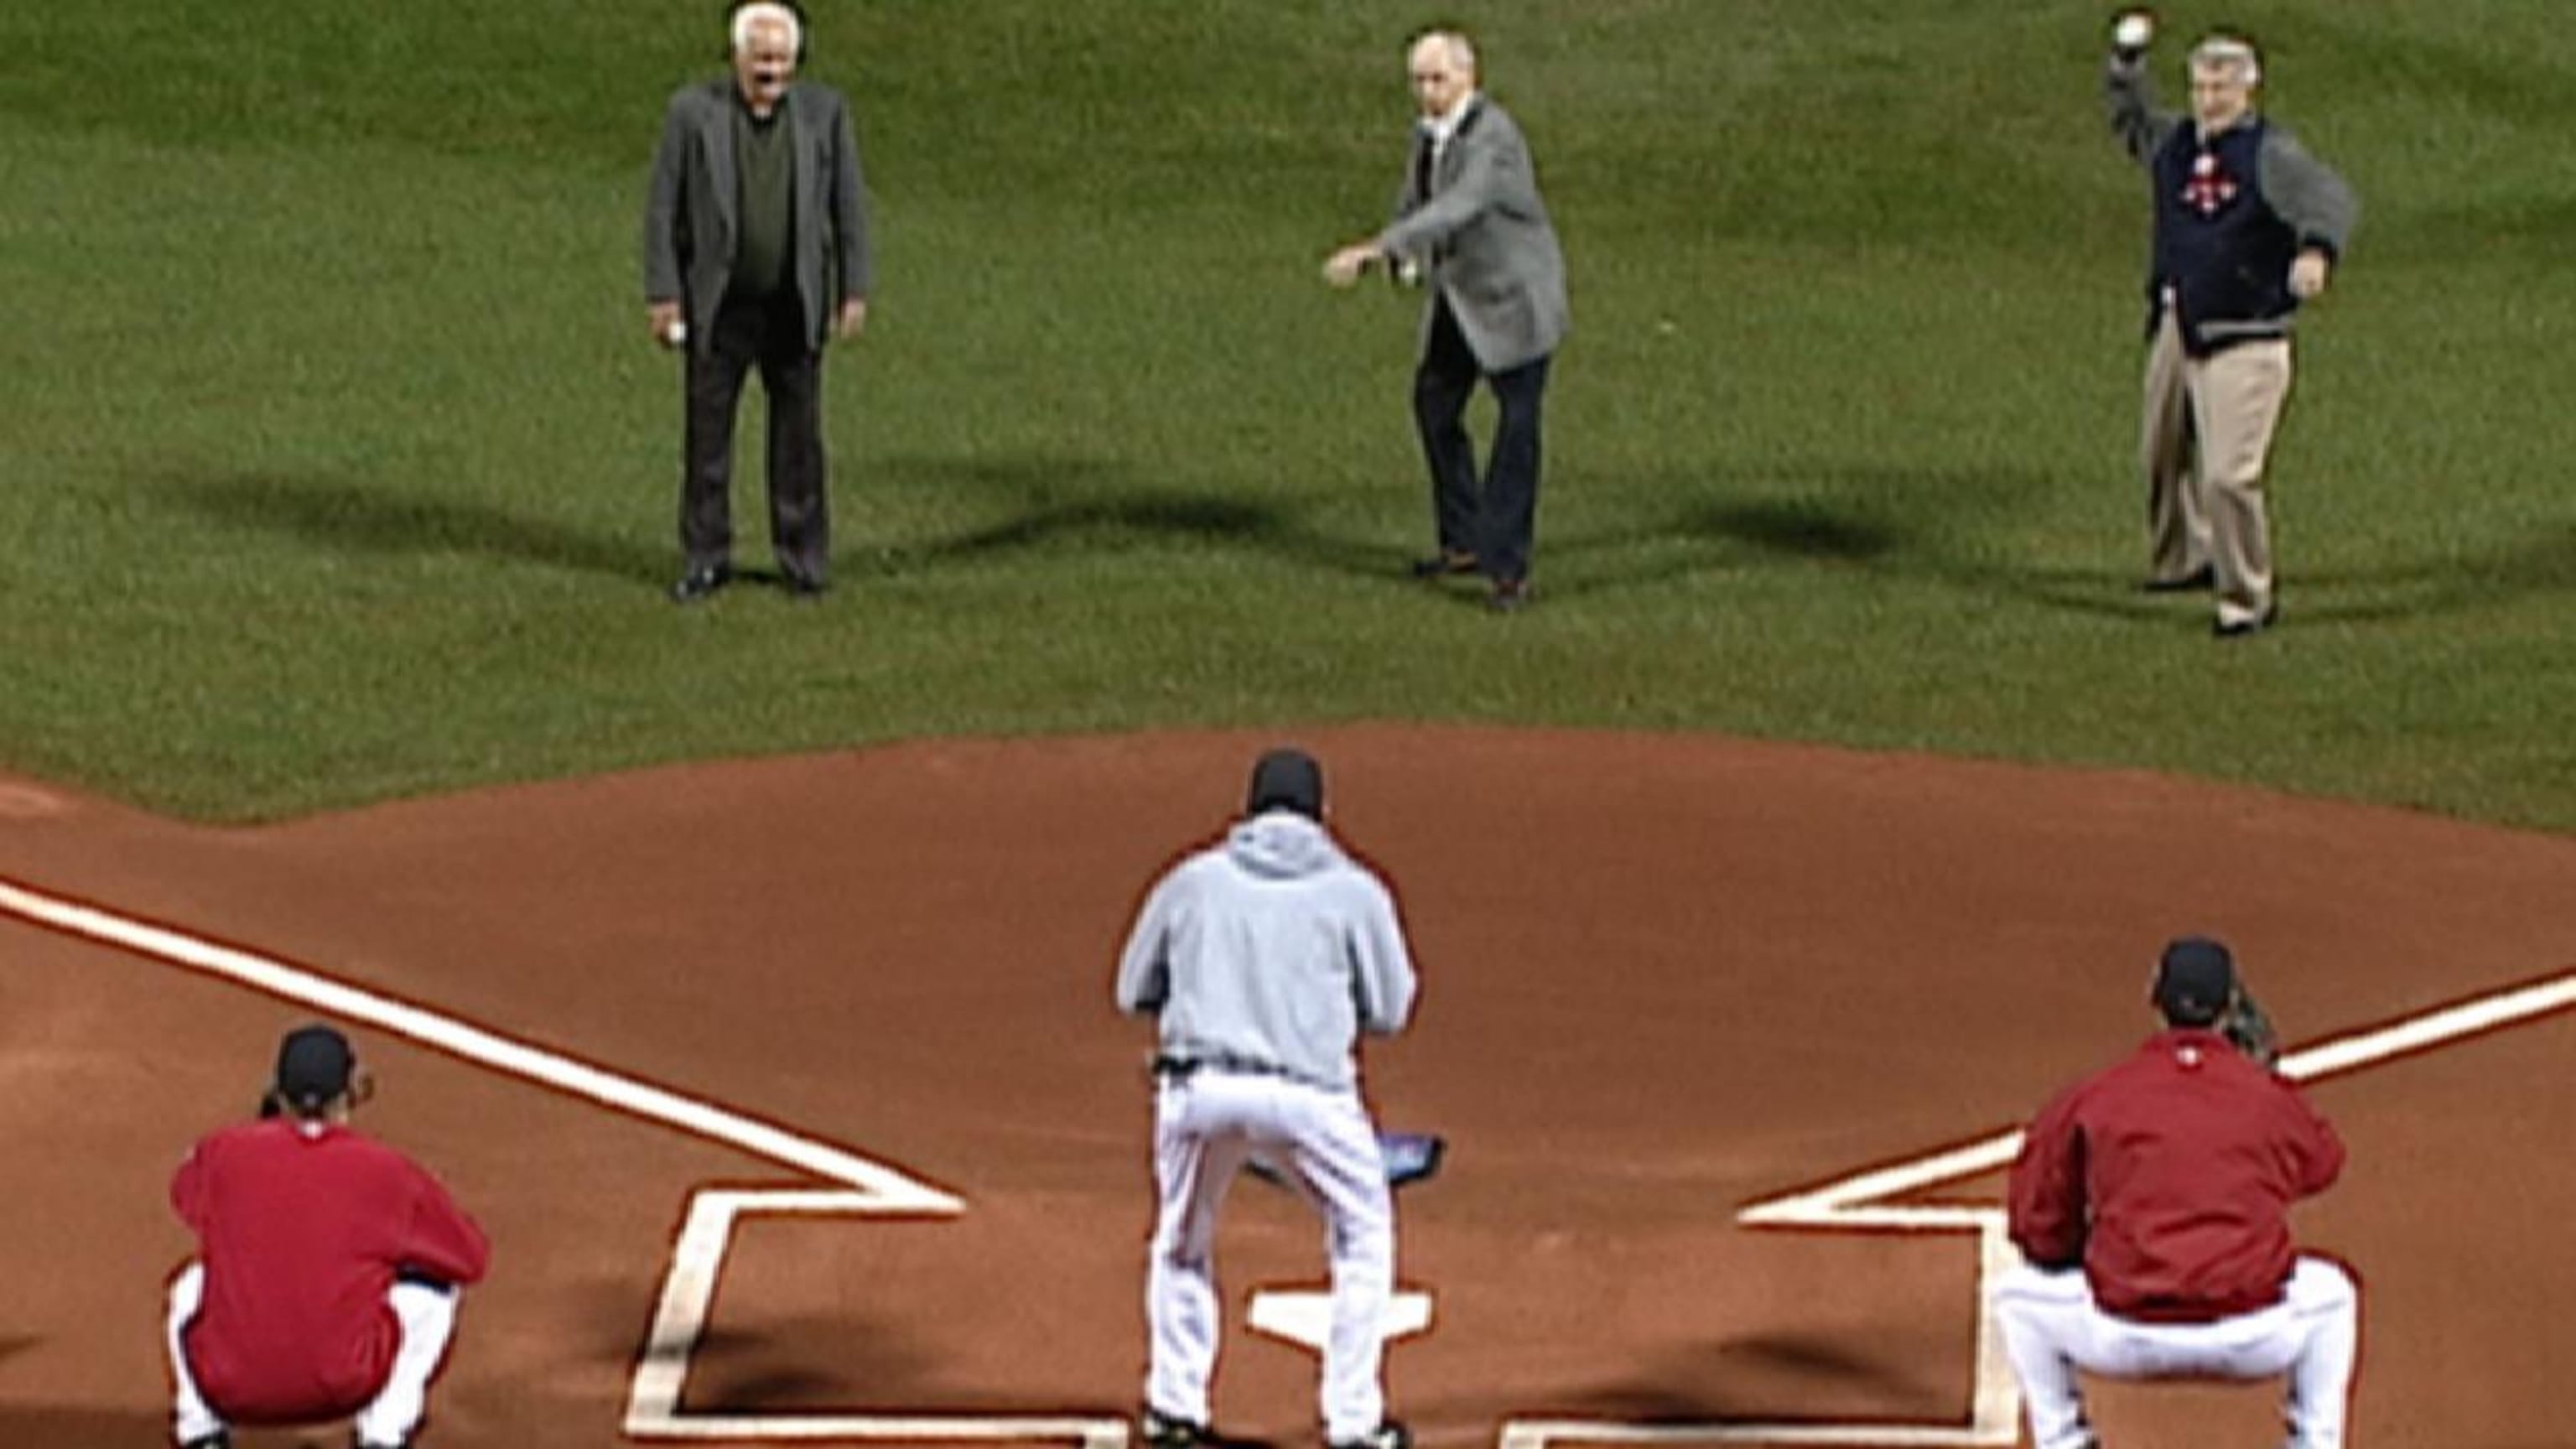 Sox legends toss first pitch